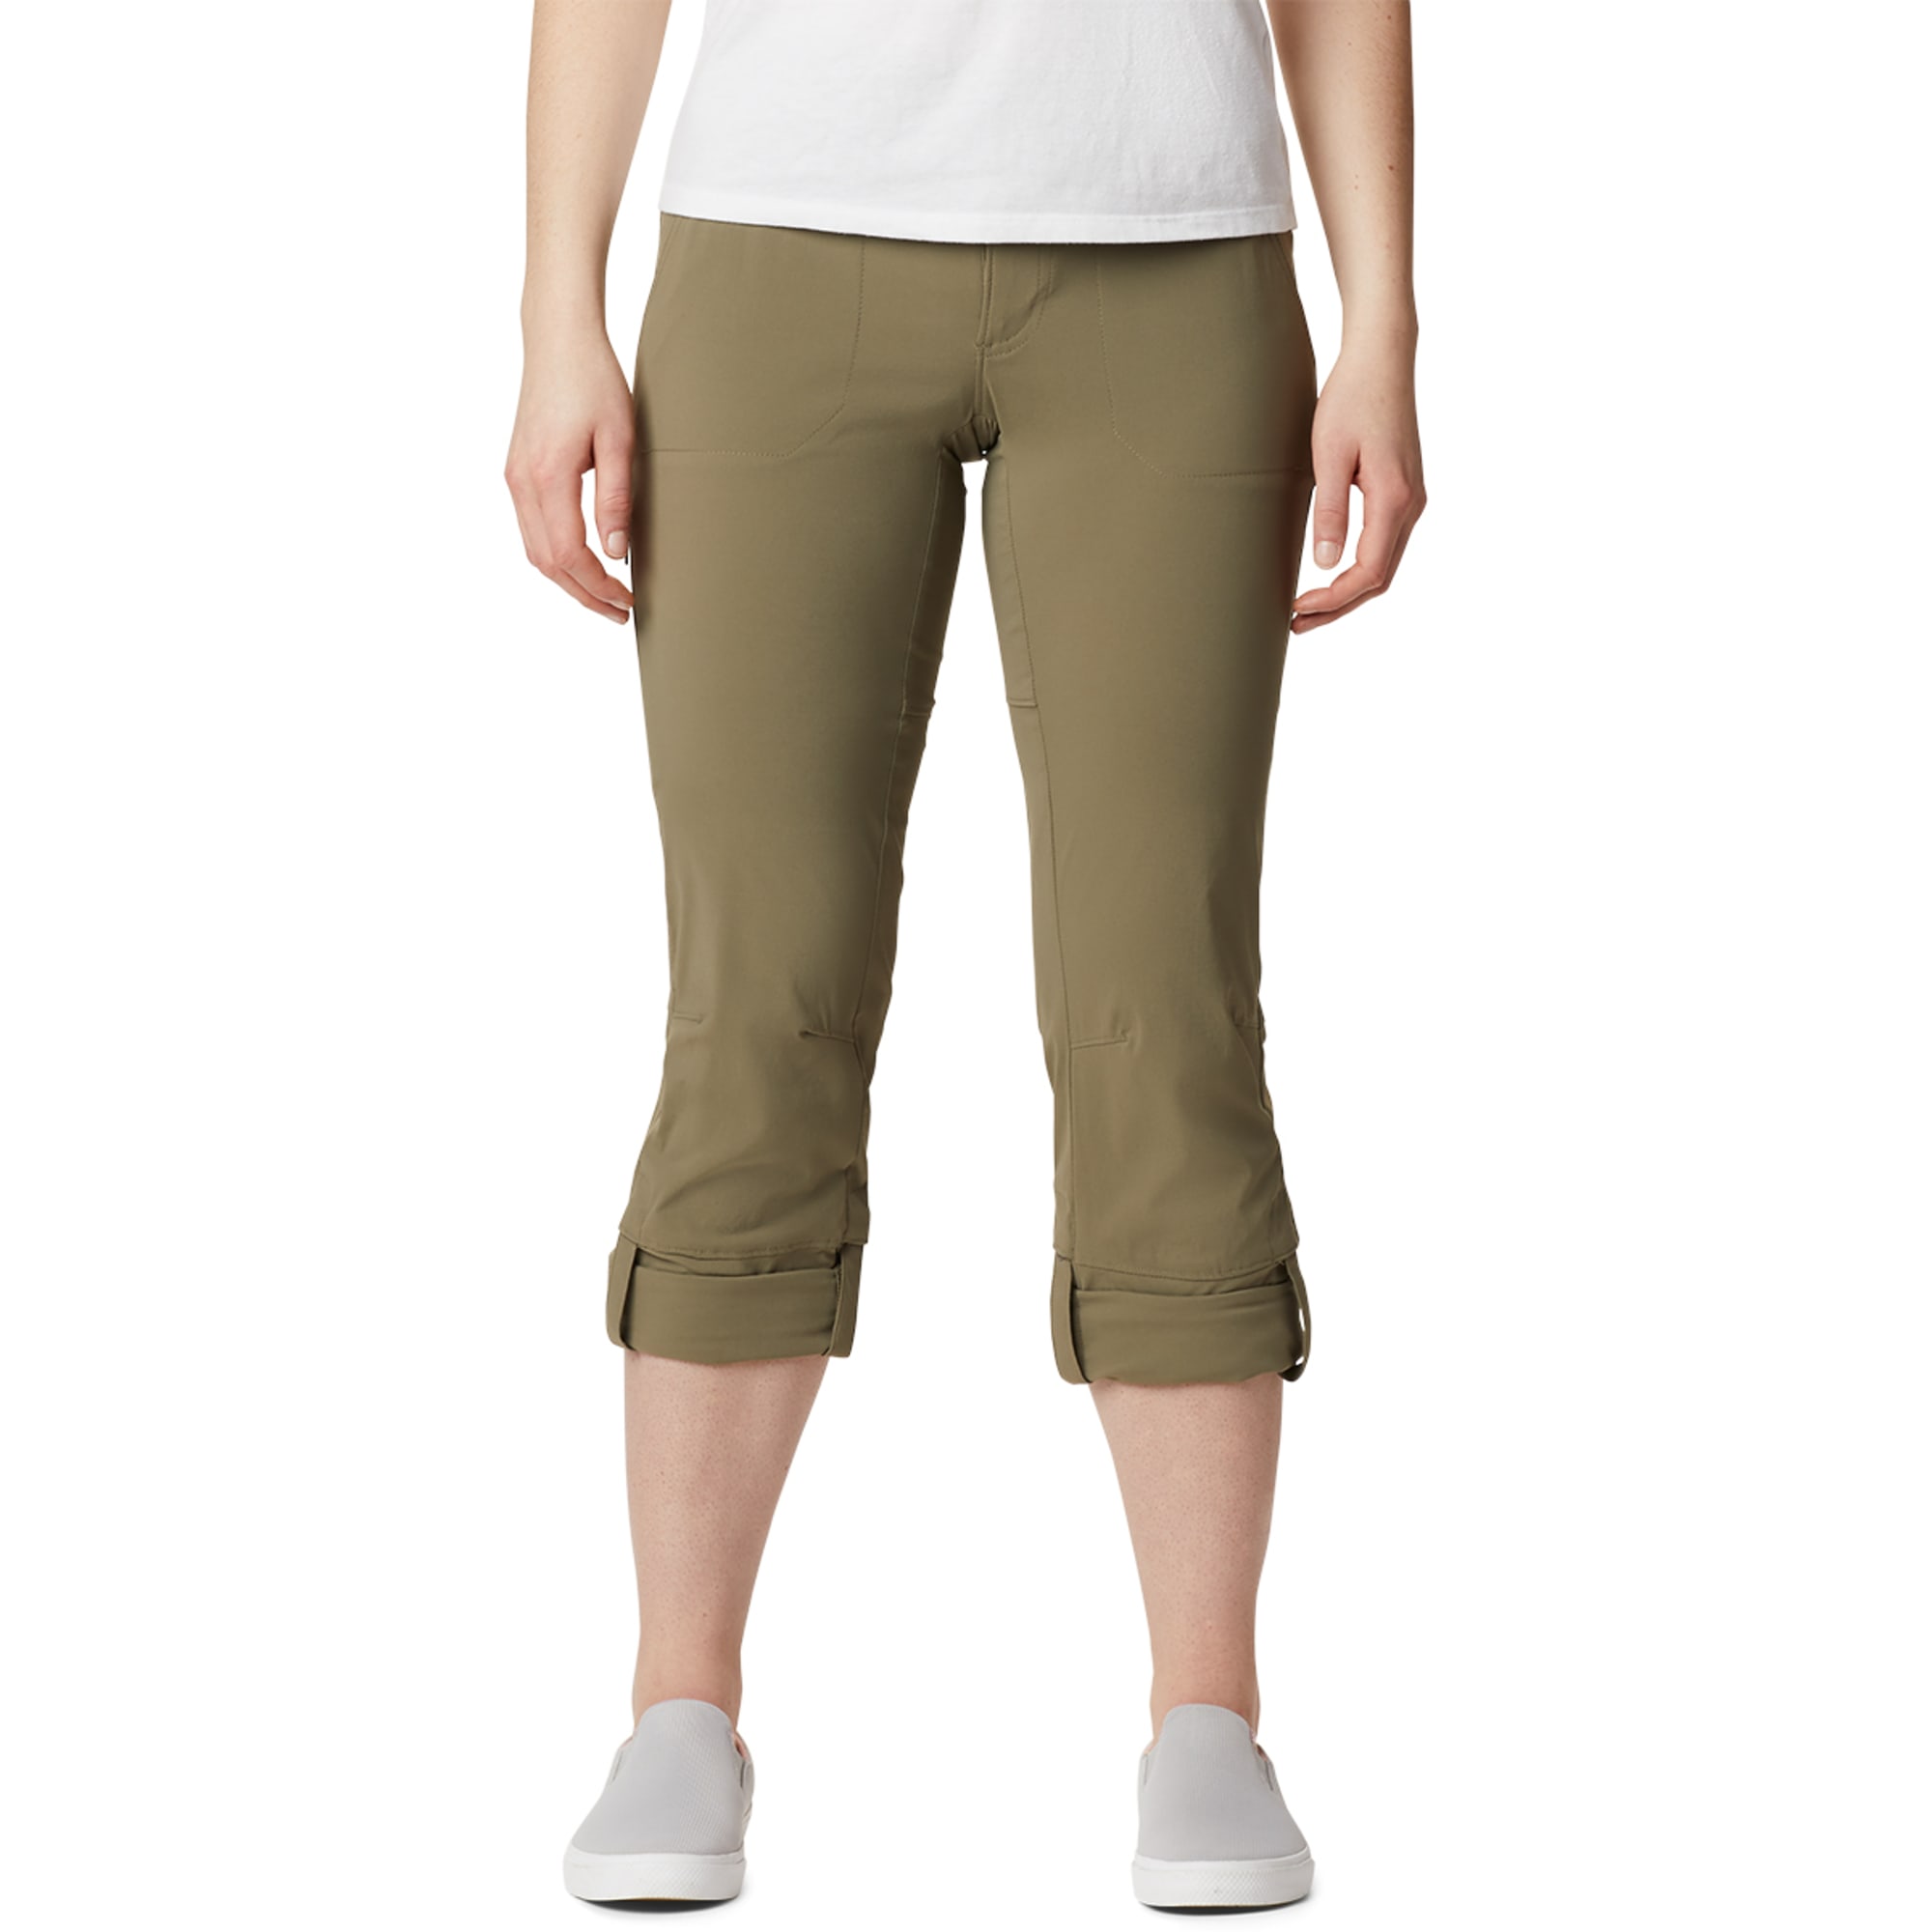 Sale - Pinery - Park Crest Track Pants (Women's Fit)